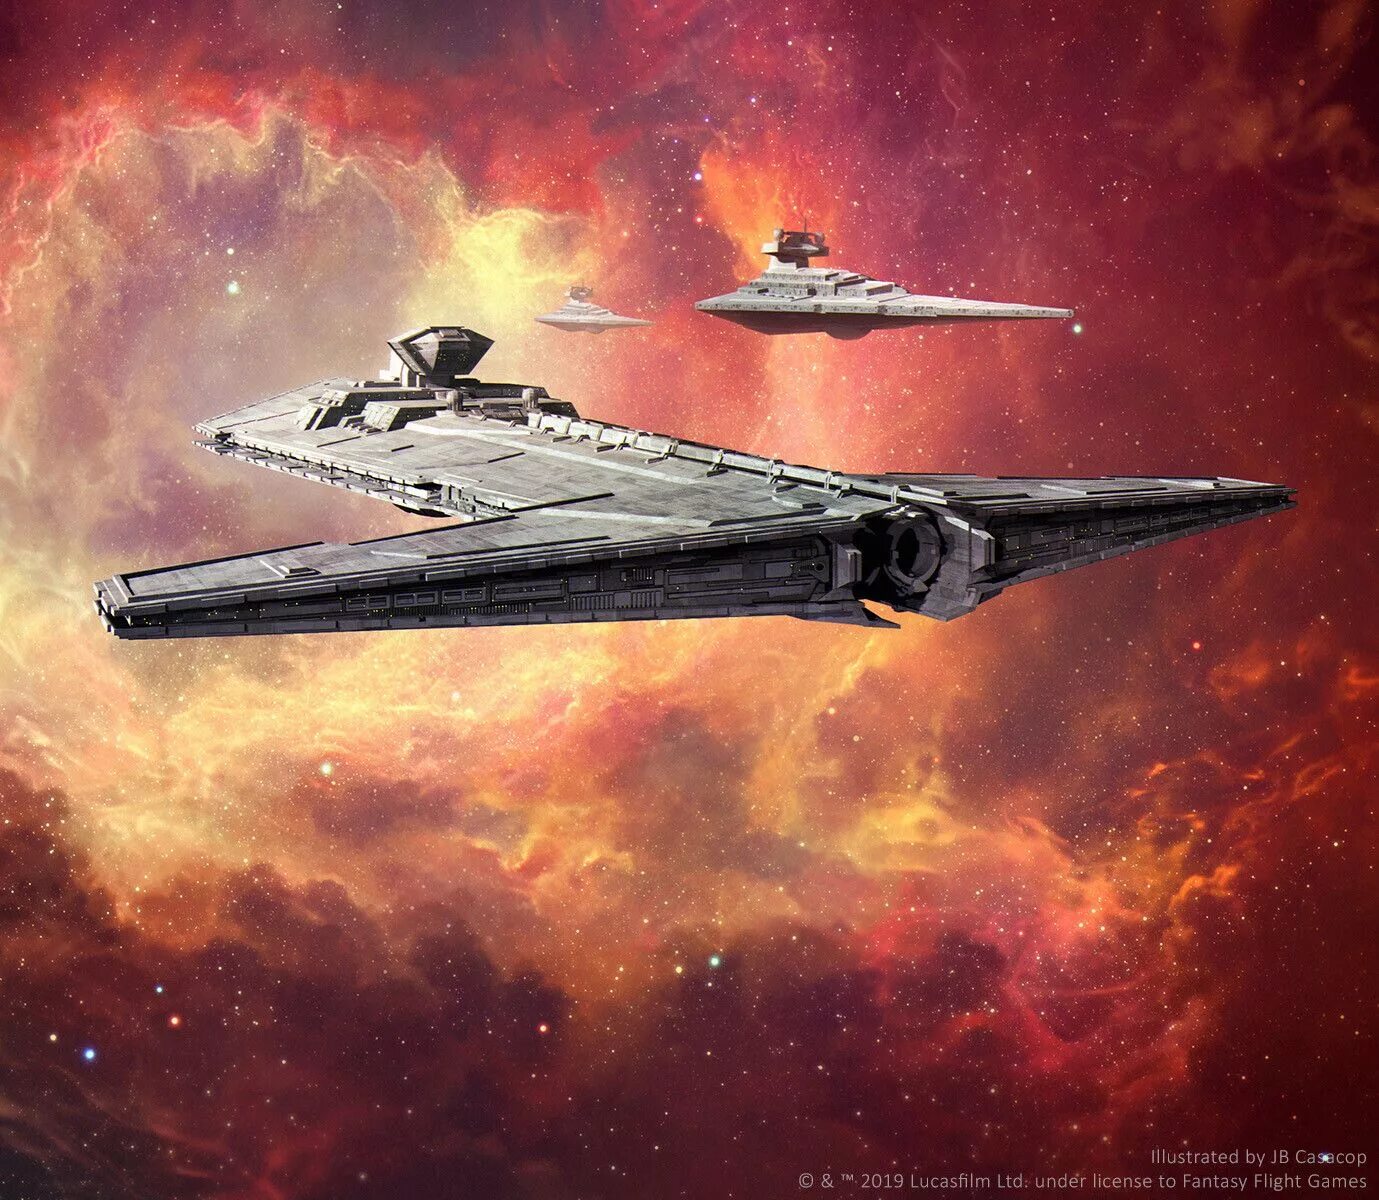 Имперский флот Звездные войны. Звёздный разрушитель империи ситхов. Звездный разрушитель типа онагр. Звезда флот